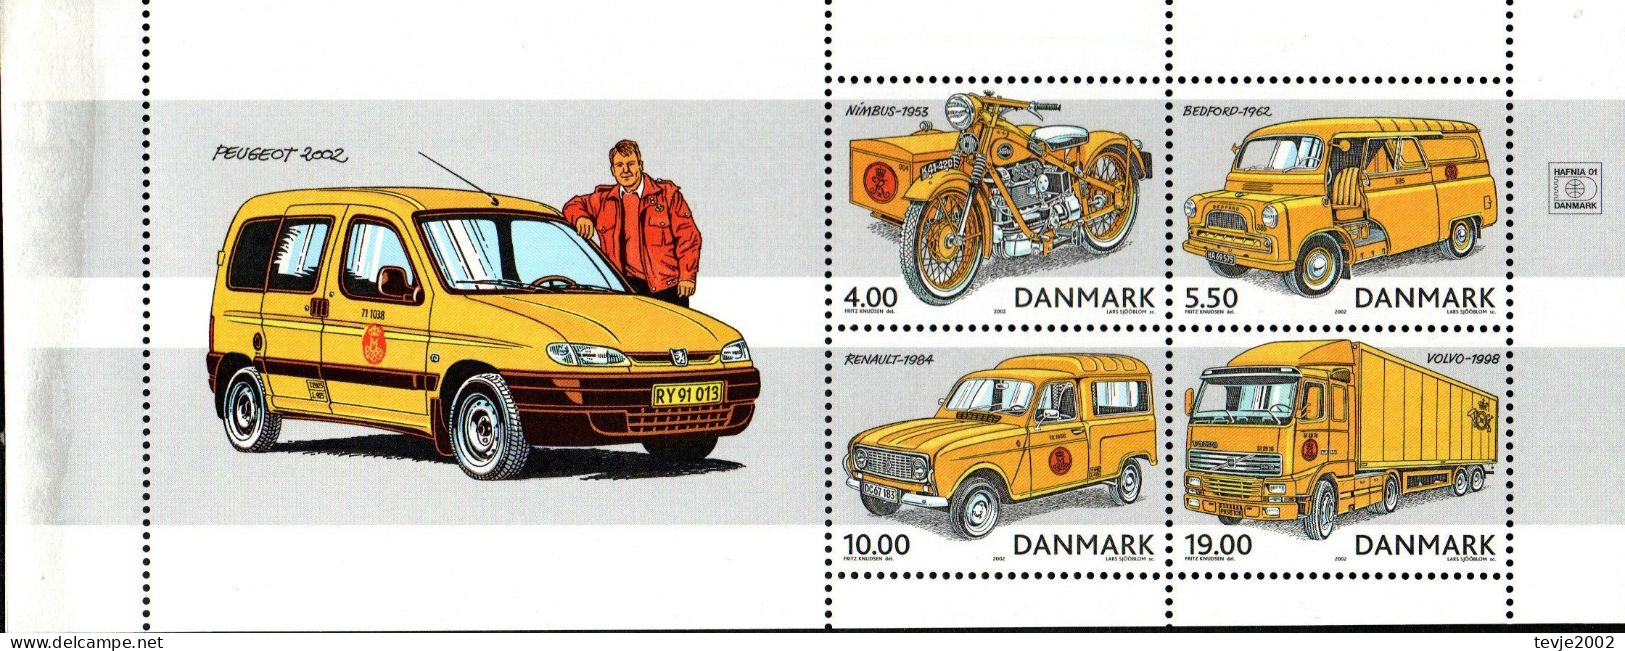 Dänemark 2002 - Mi.Nr. 1312 - 1315 (aus Markenheftchen) - Postfrisch MNH - Post - Neufs